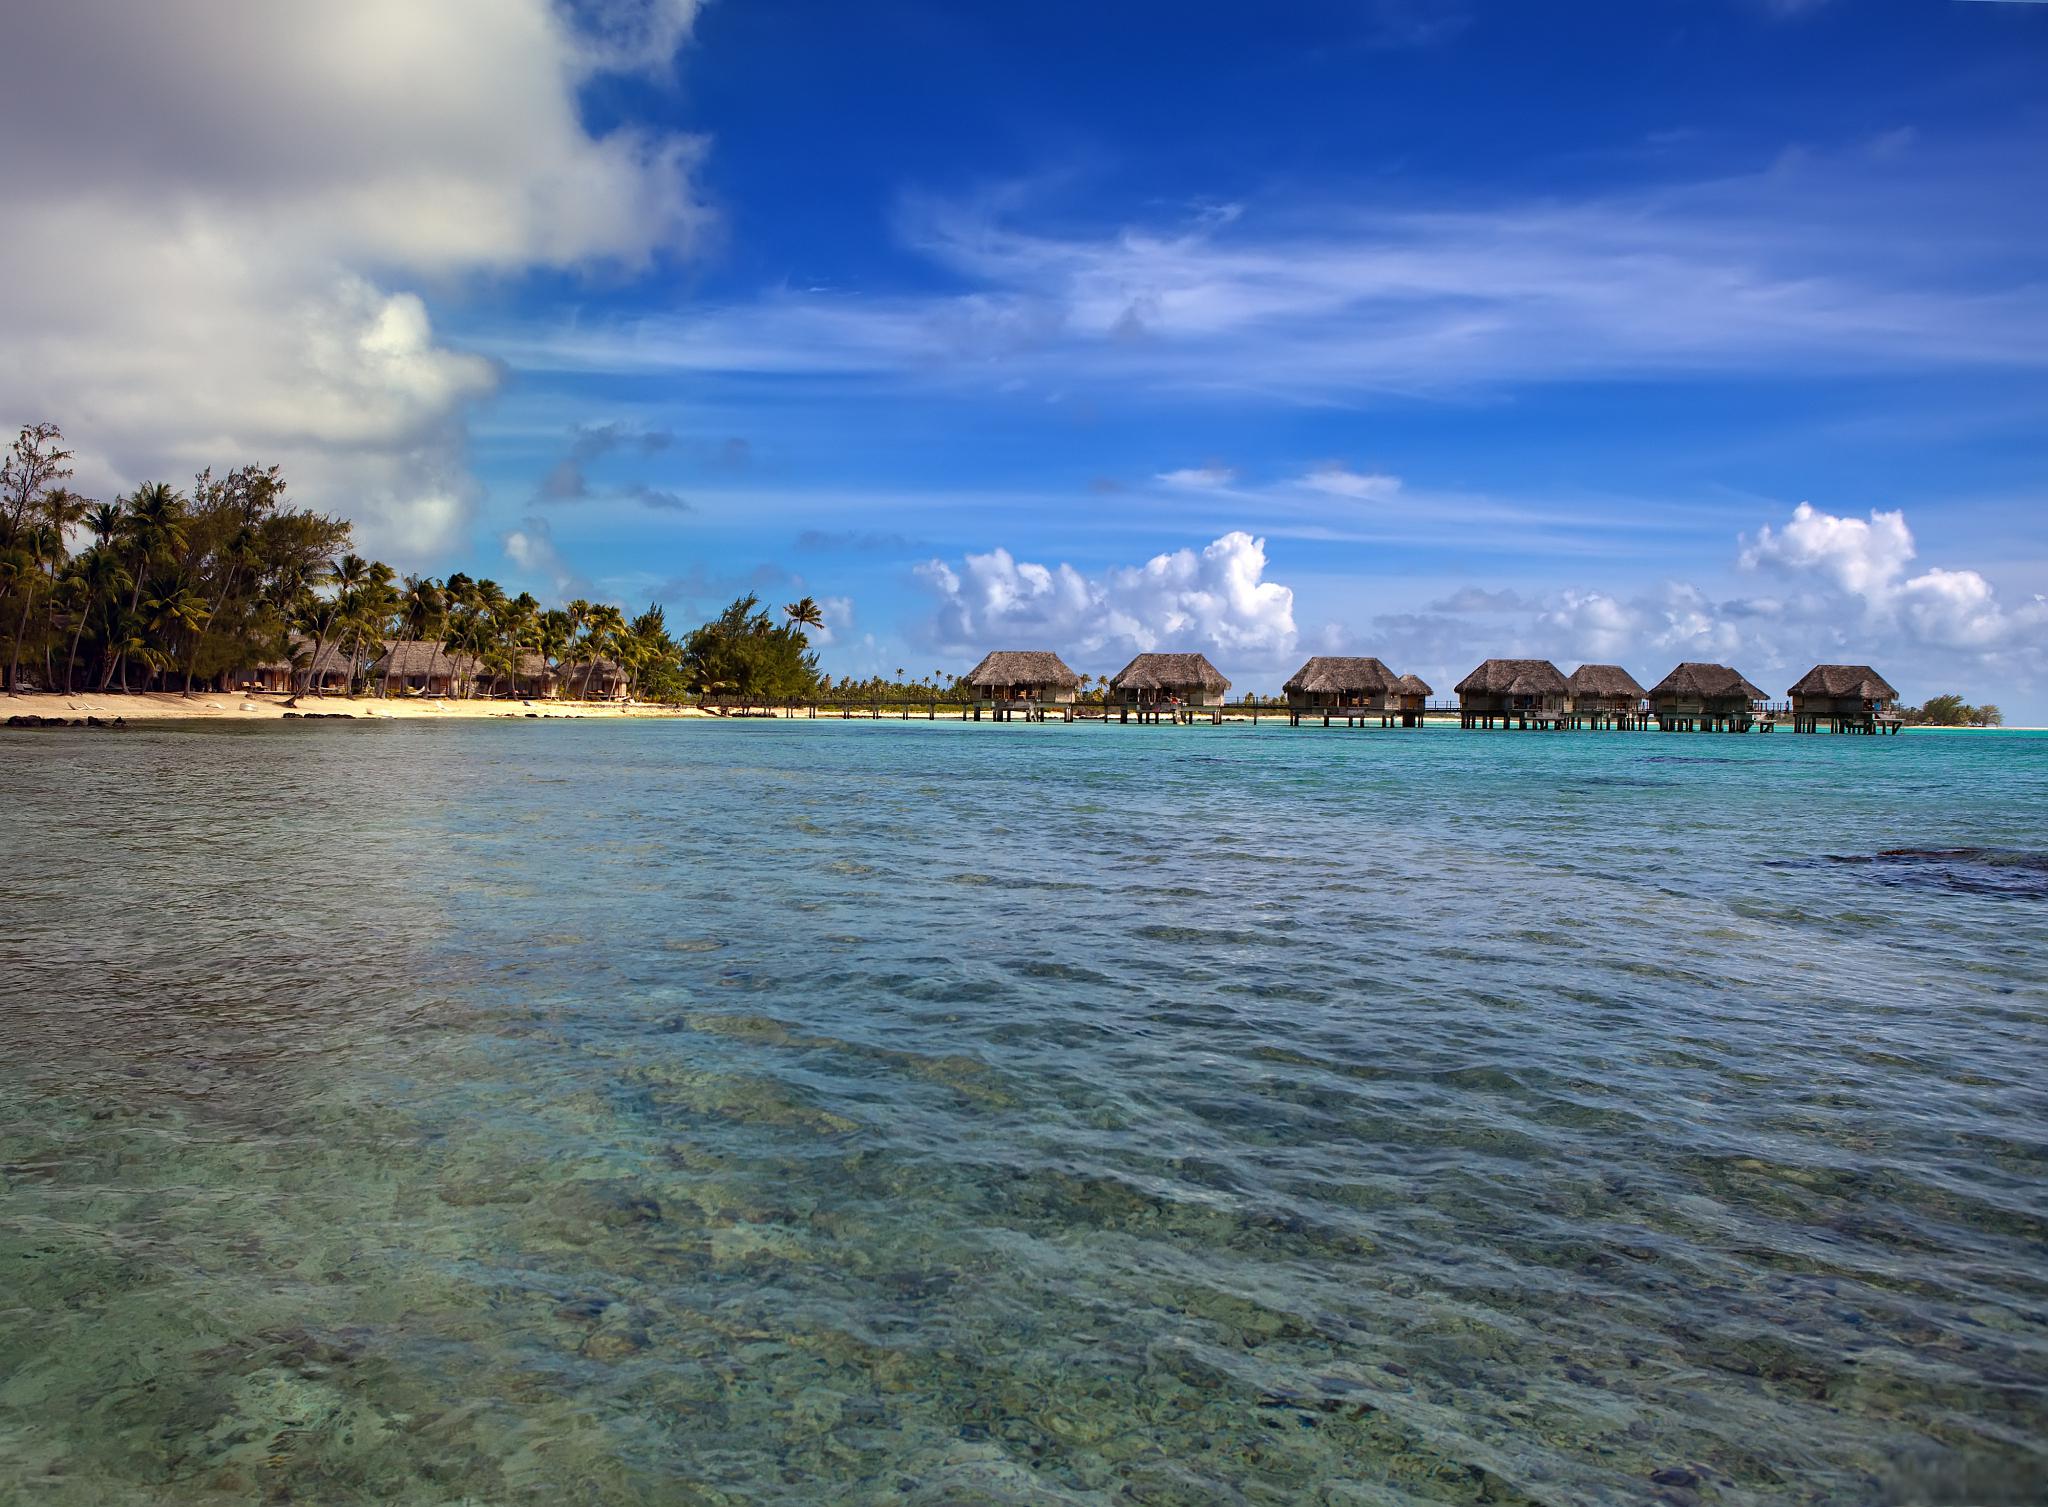 斯里兰卡,印度洋上的宝石 斯里兰卡,一个被誉为印度洋上的宝石的国家